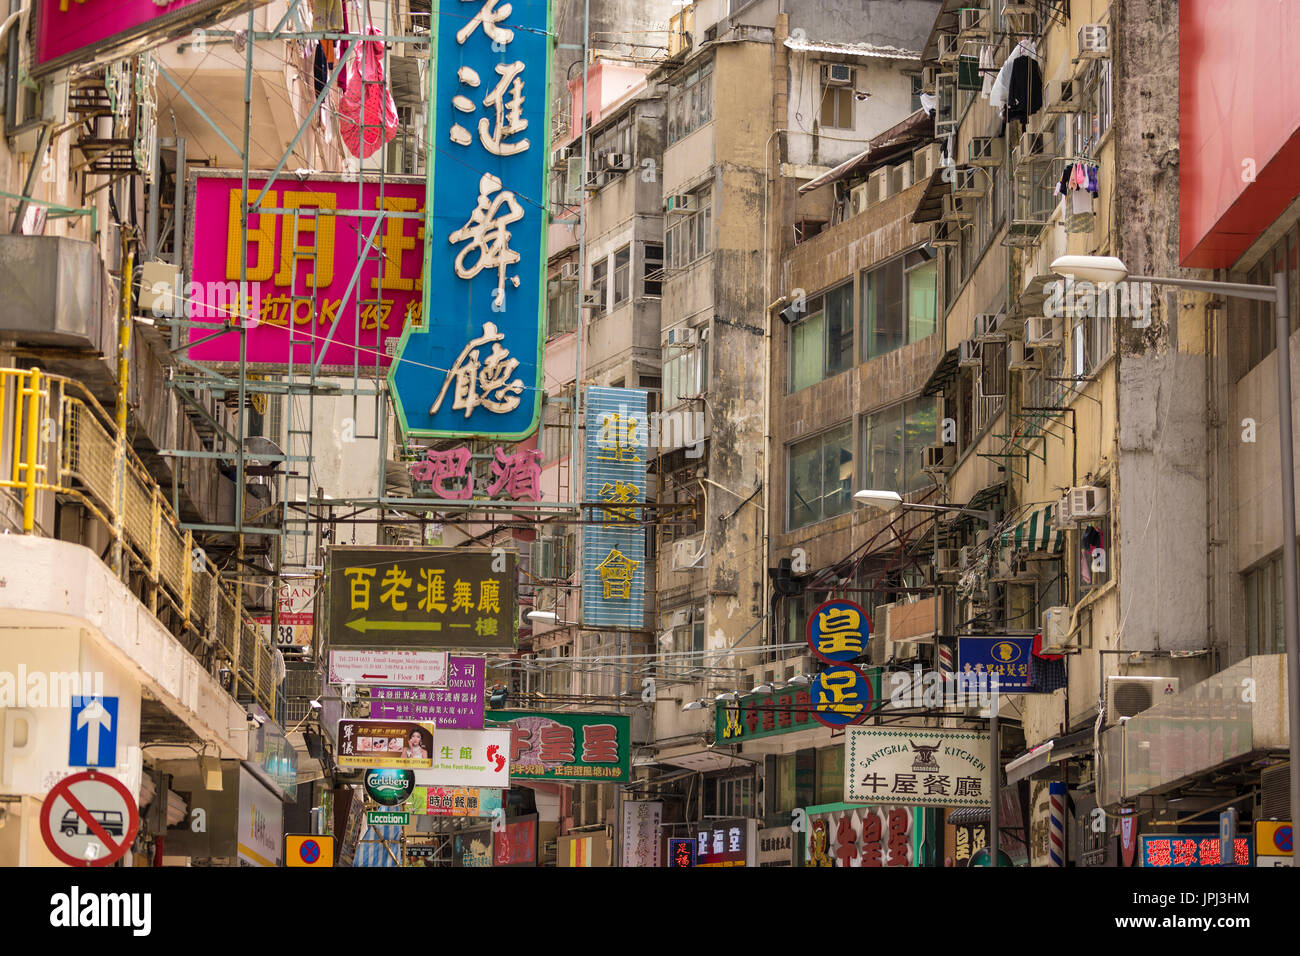 Cacophonie de signes chinois et anglais sur les bâtiments délabrés dans la section commerciale de Kowloon, Hong Kong Banque D'Images